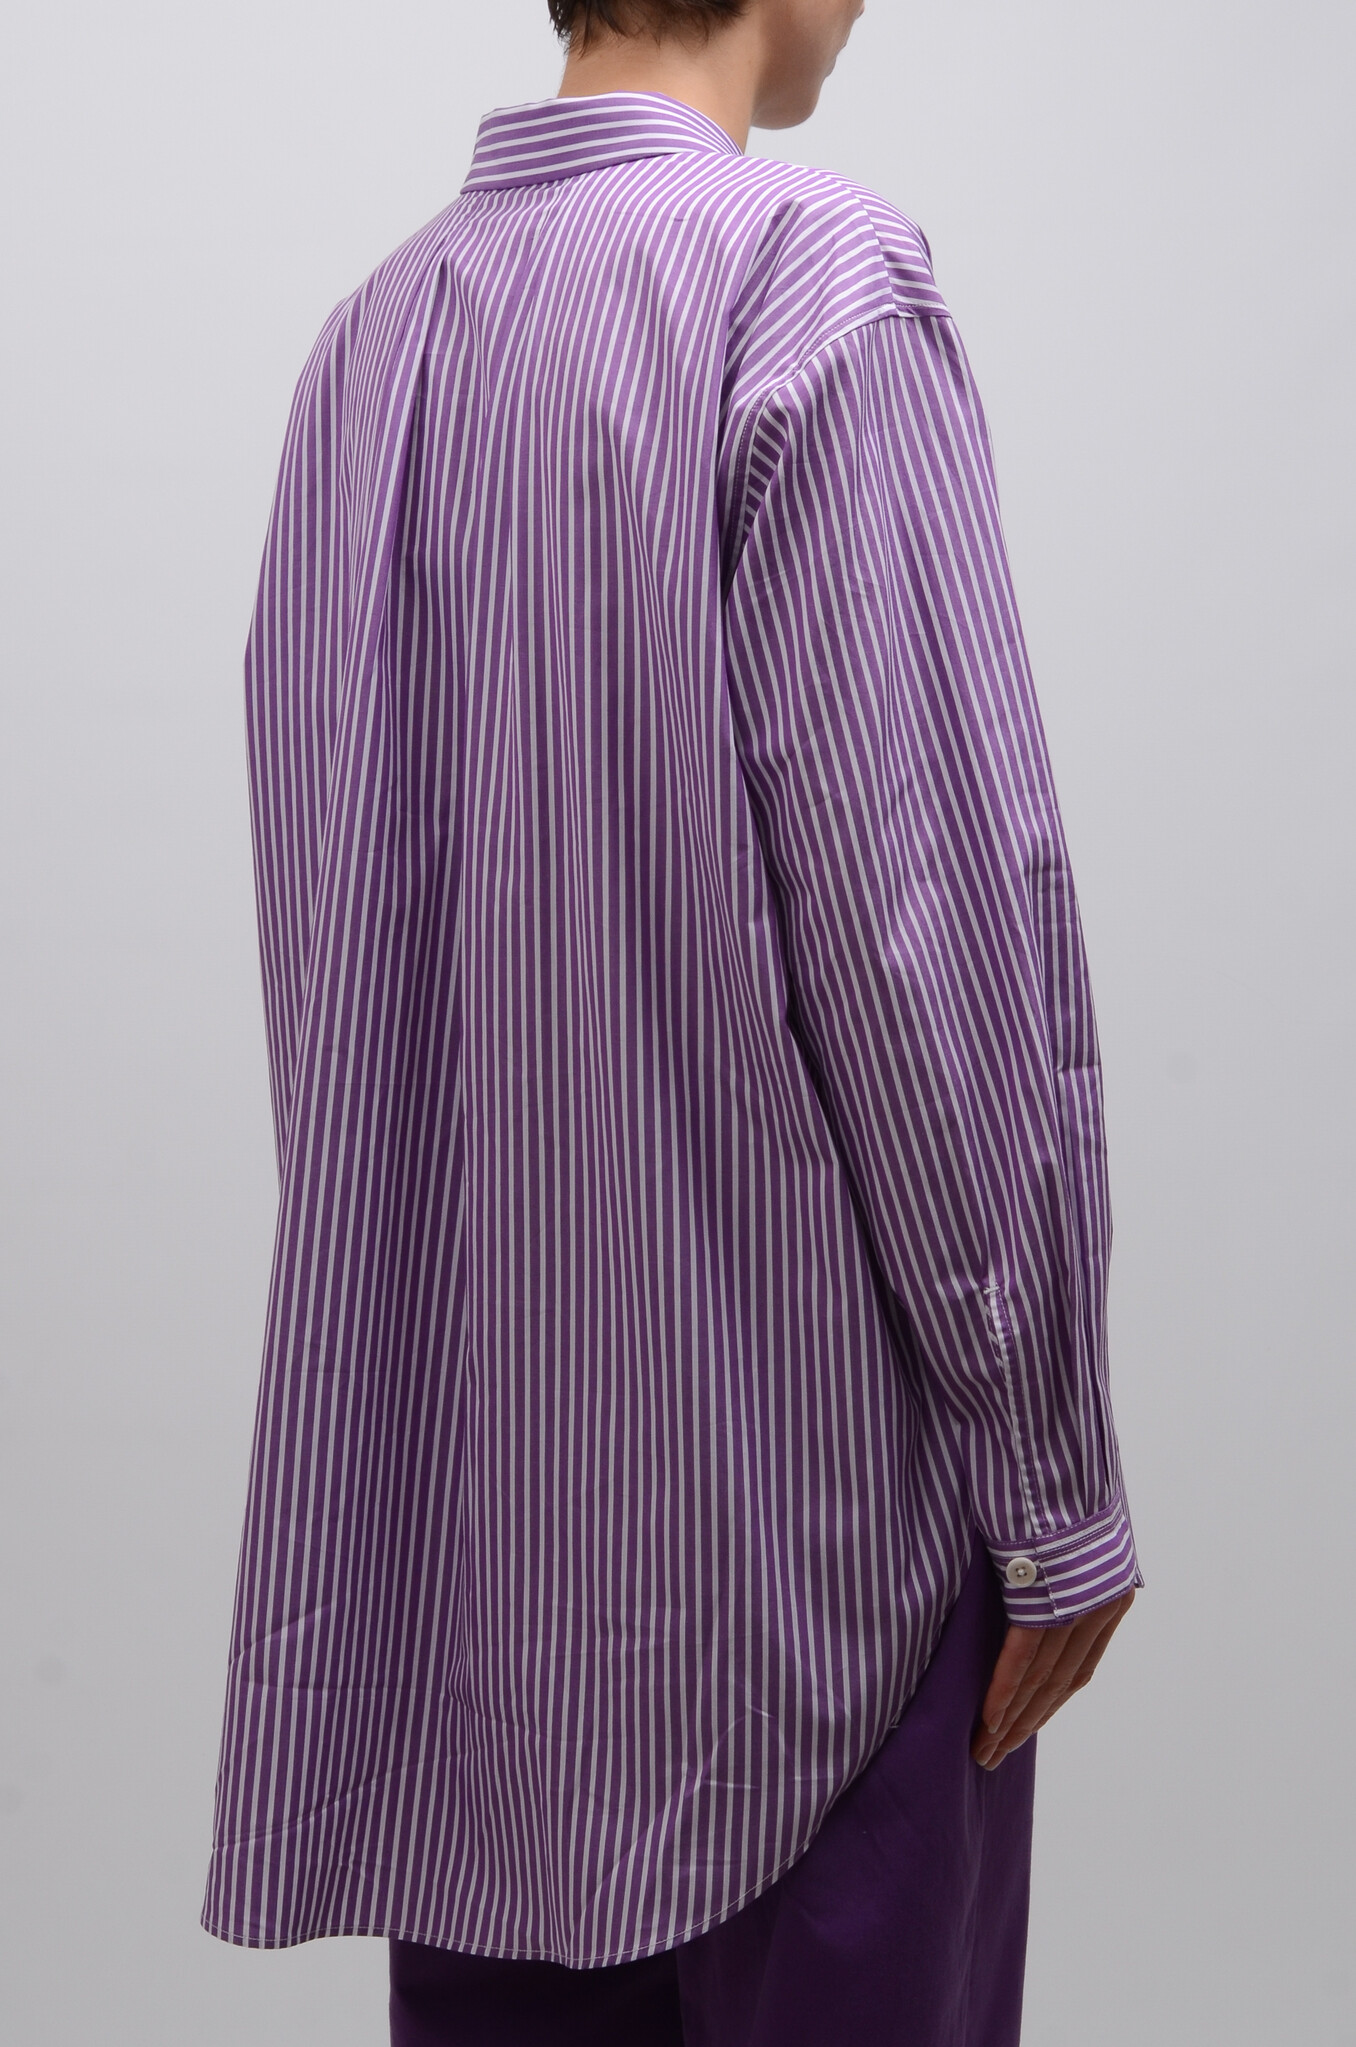 Shelby Shirt in Purple Stripe-5